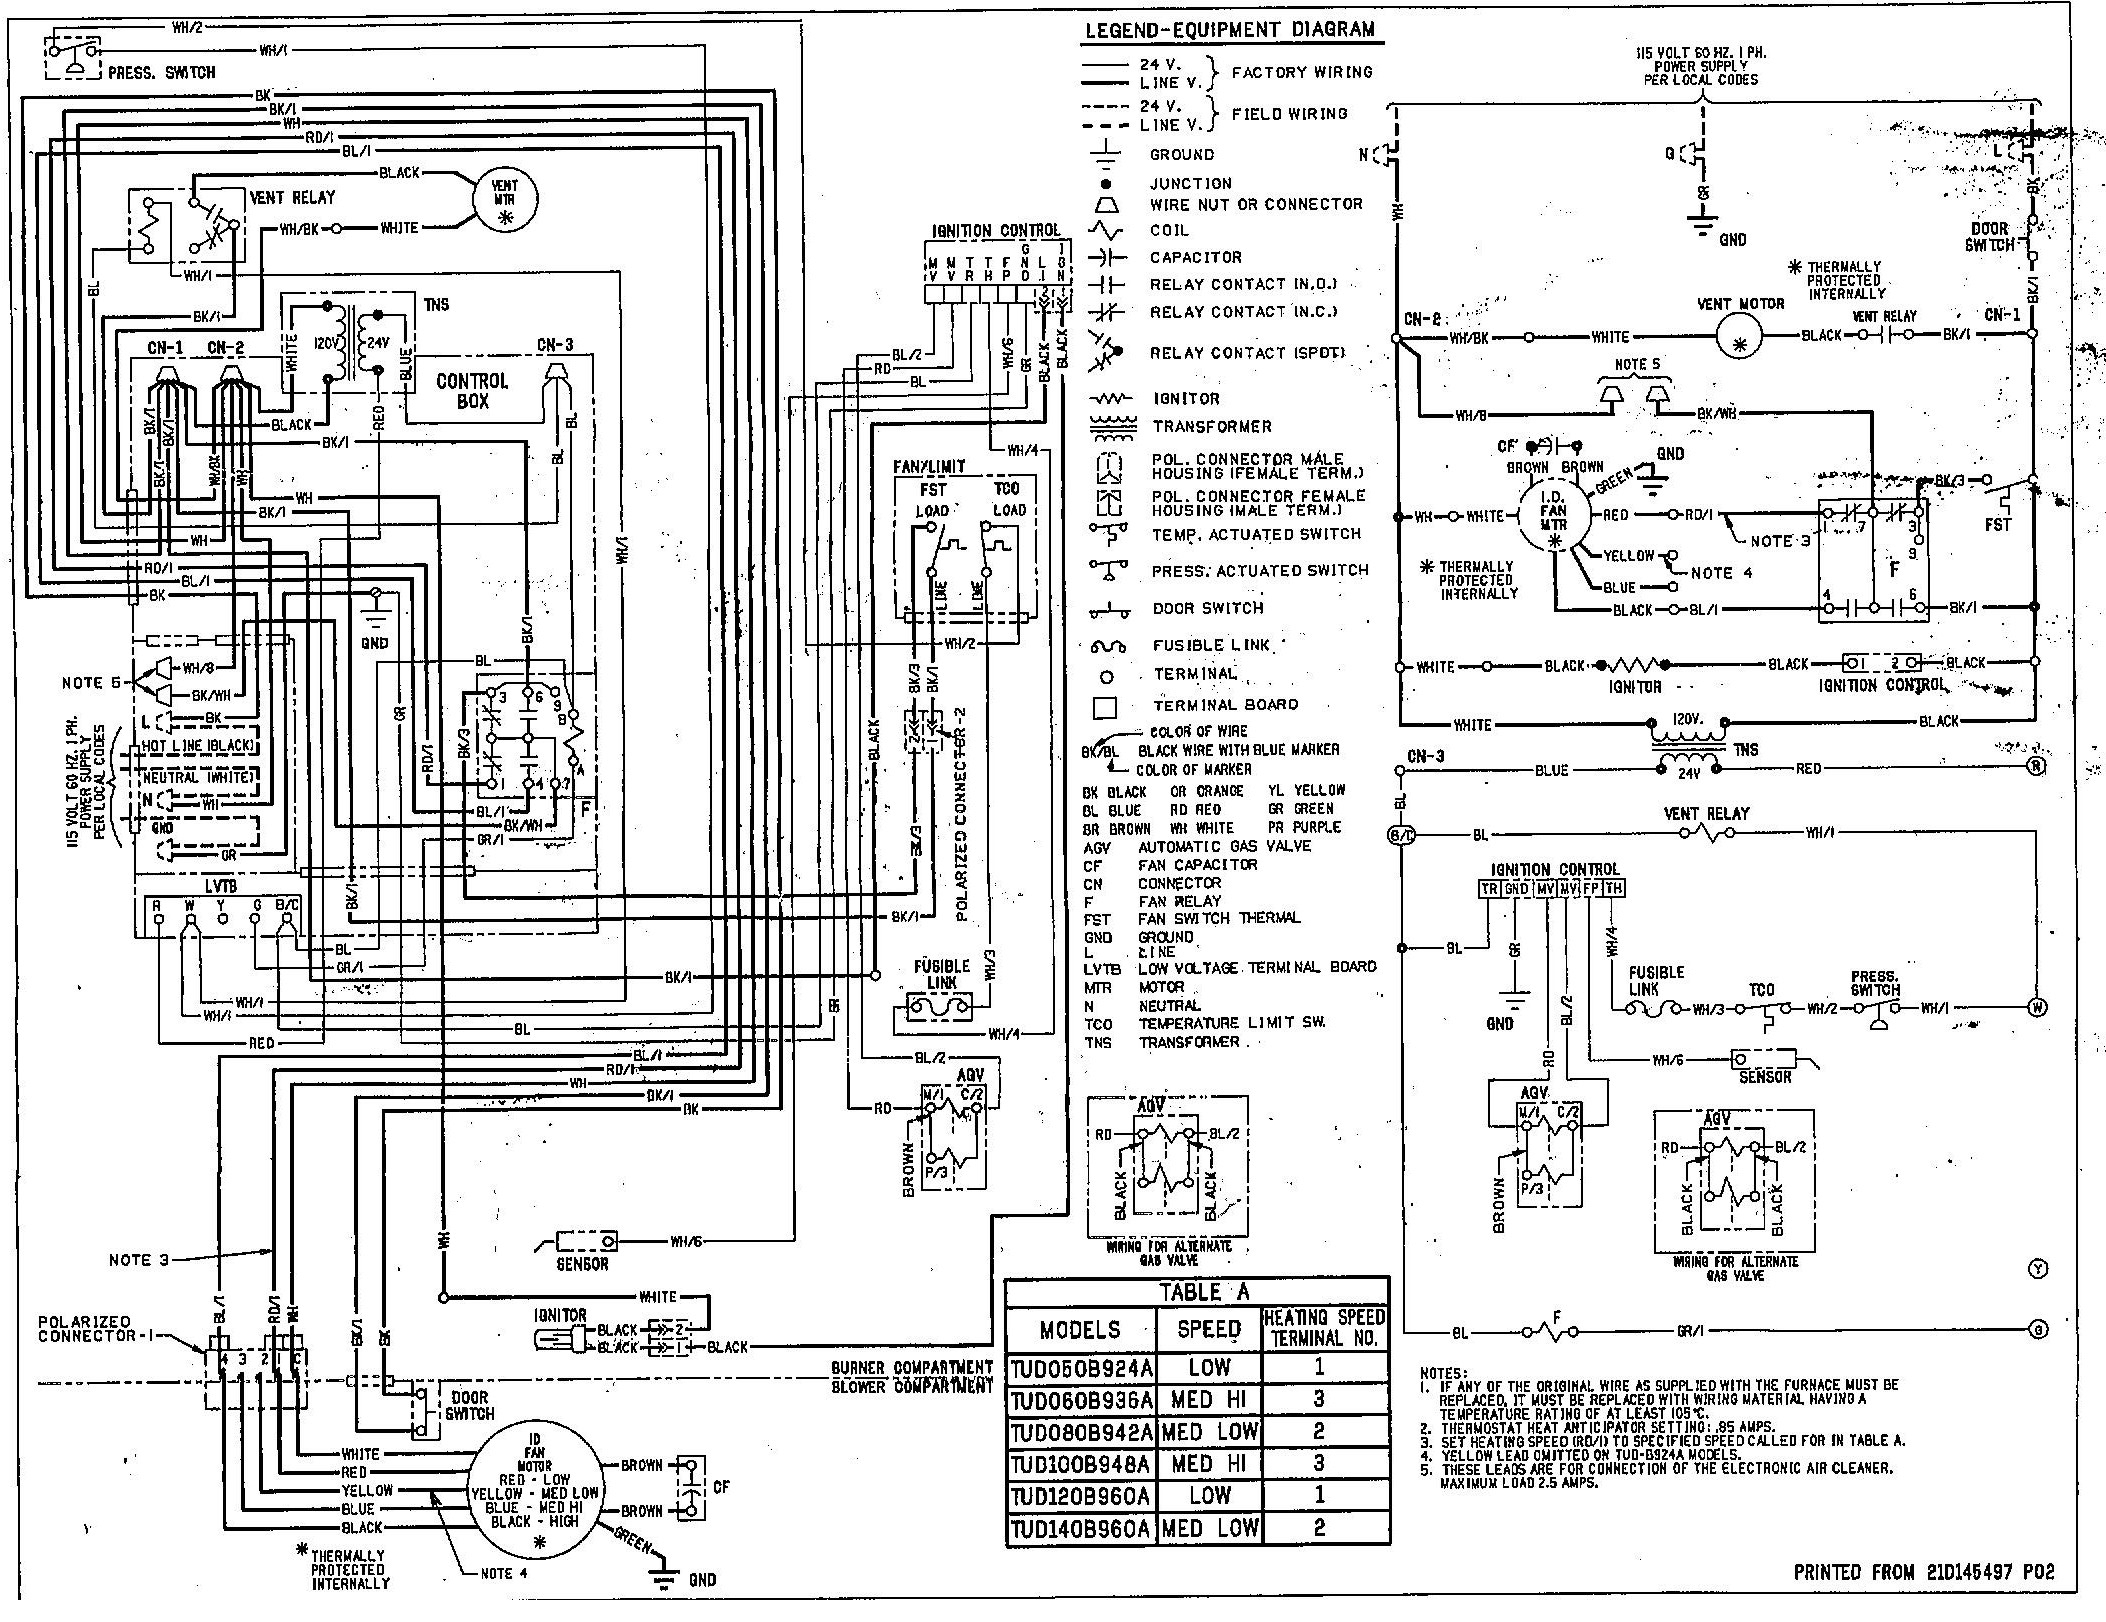 45 Electric Furnace Wiring Diagram, Dayton Gas Furnace Wiring - Goodman Electric Furnace Wiring Diagram